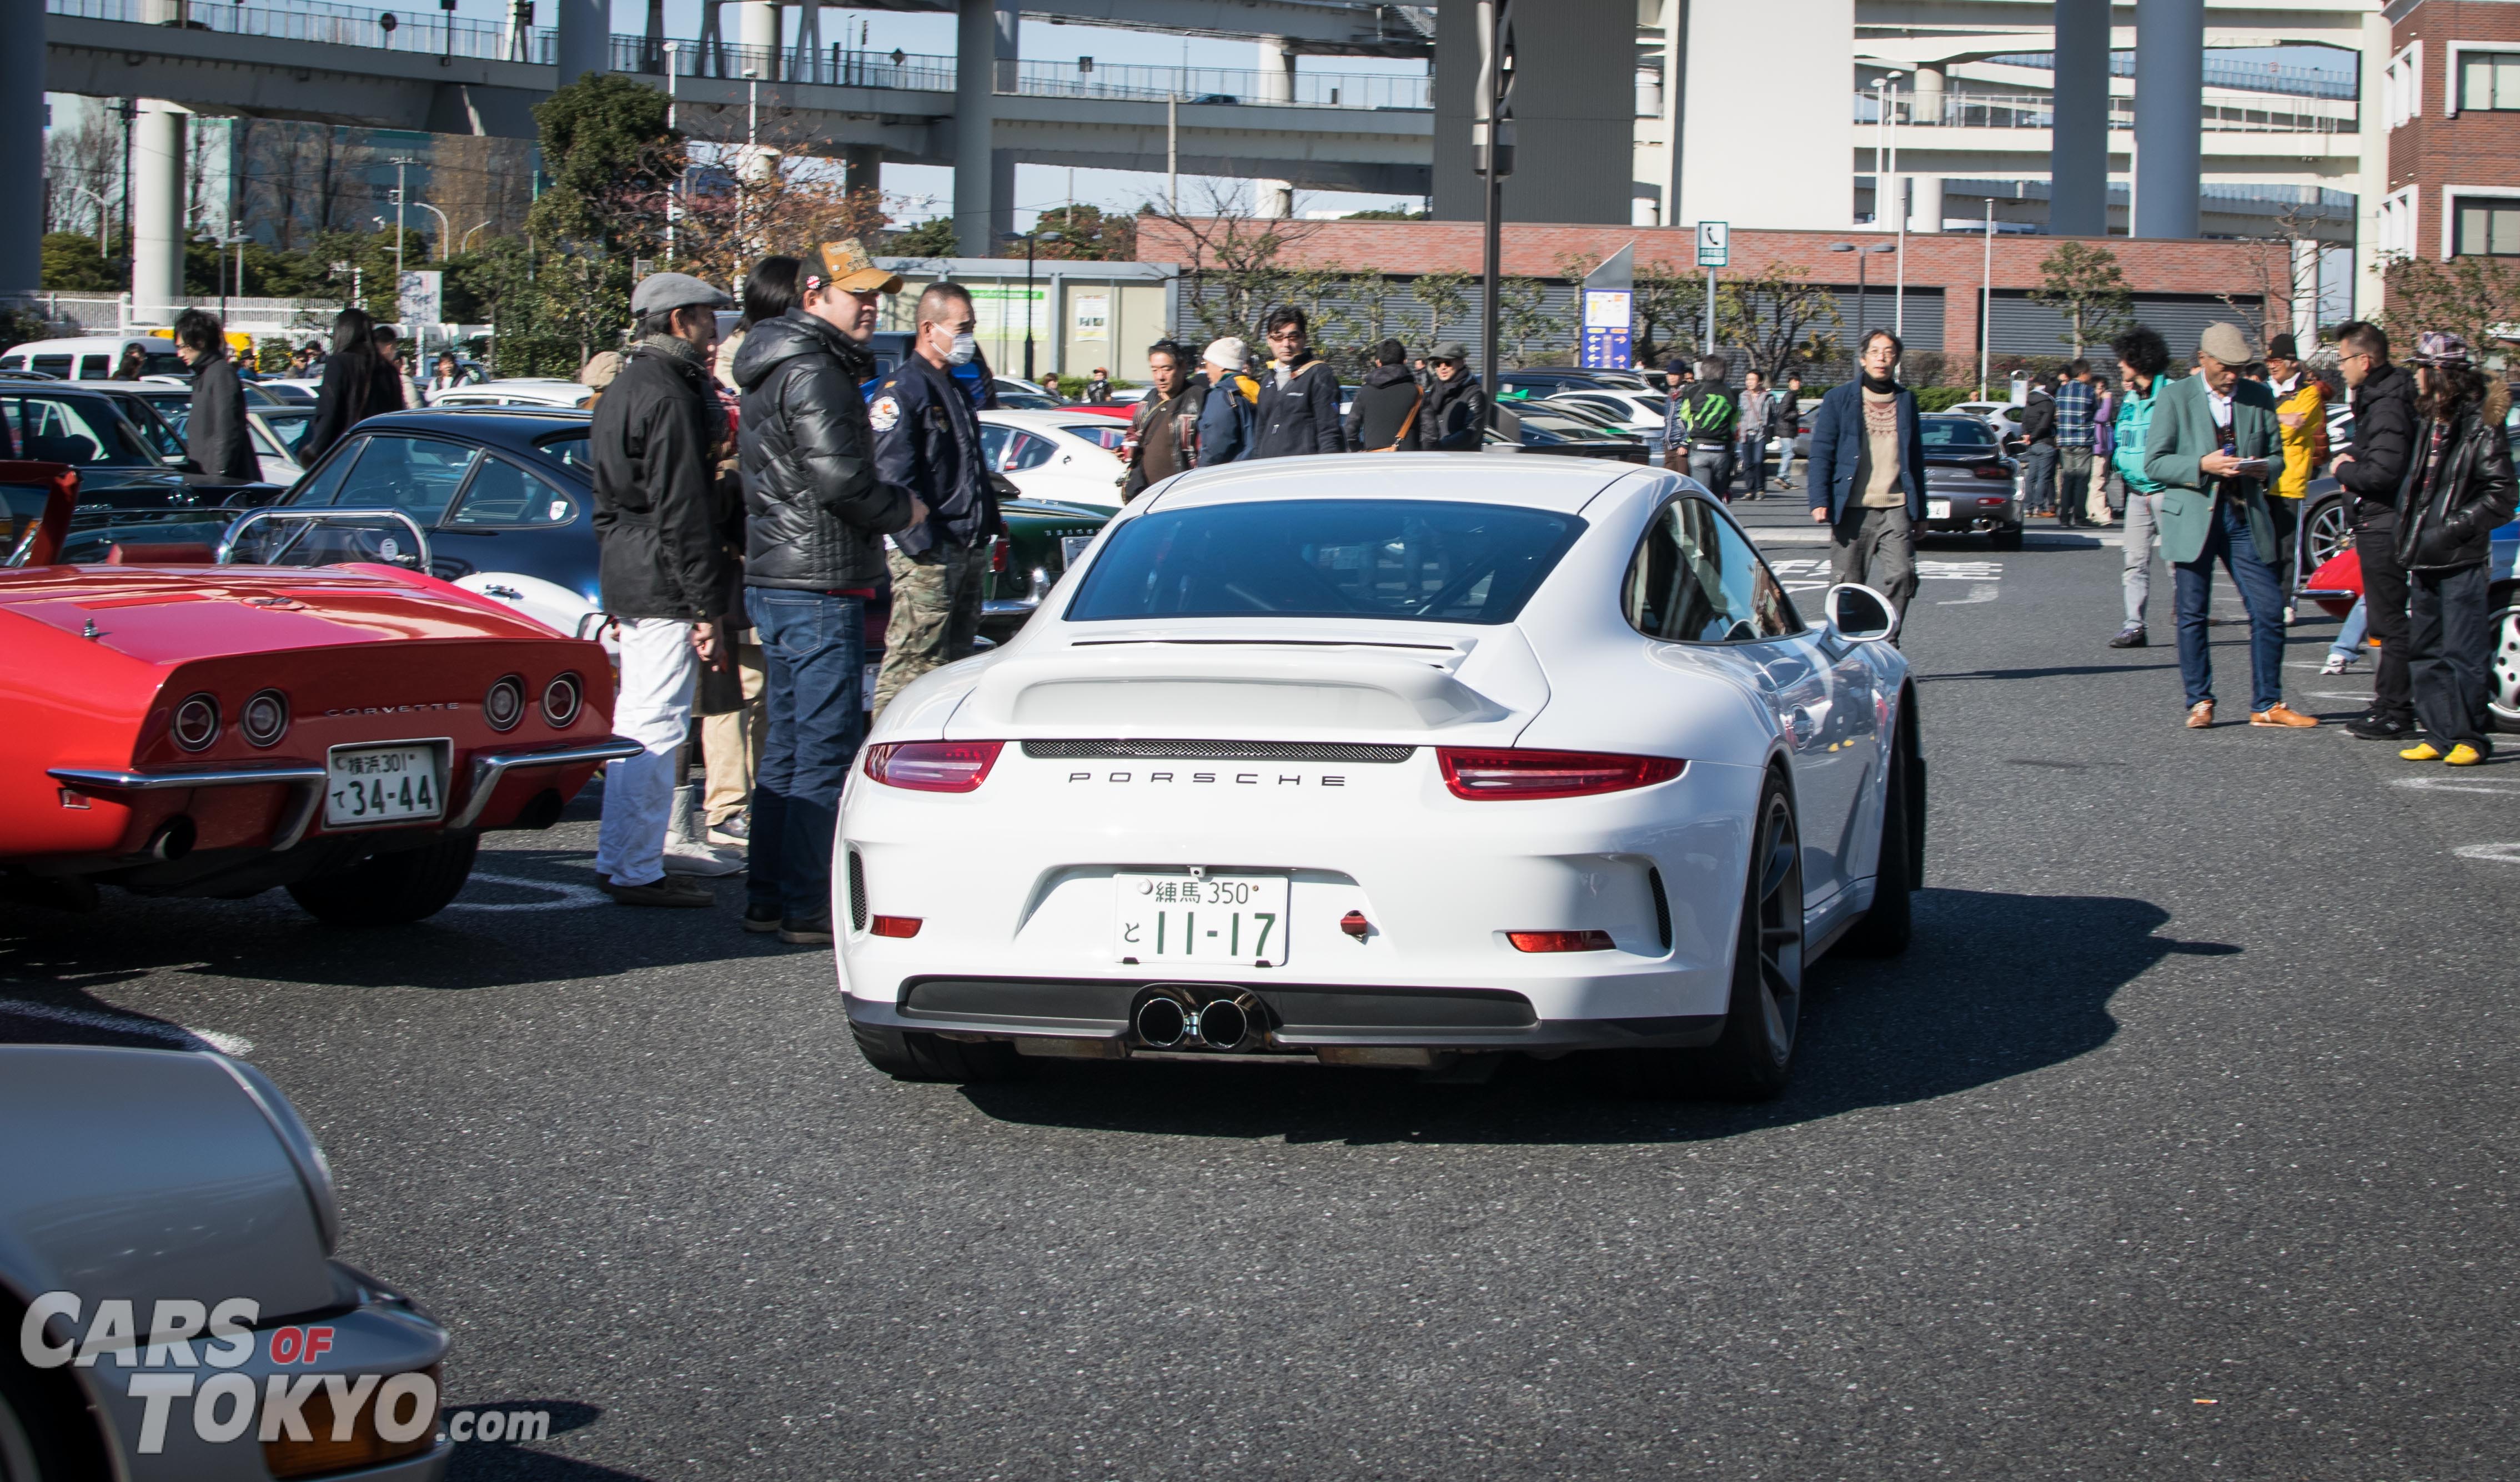 Cars of Tokyo Porsche 911 GT3 